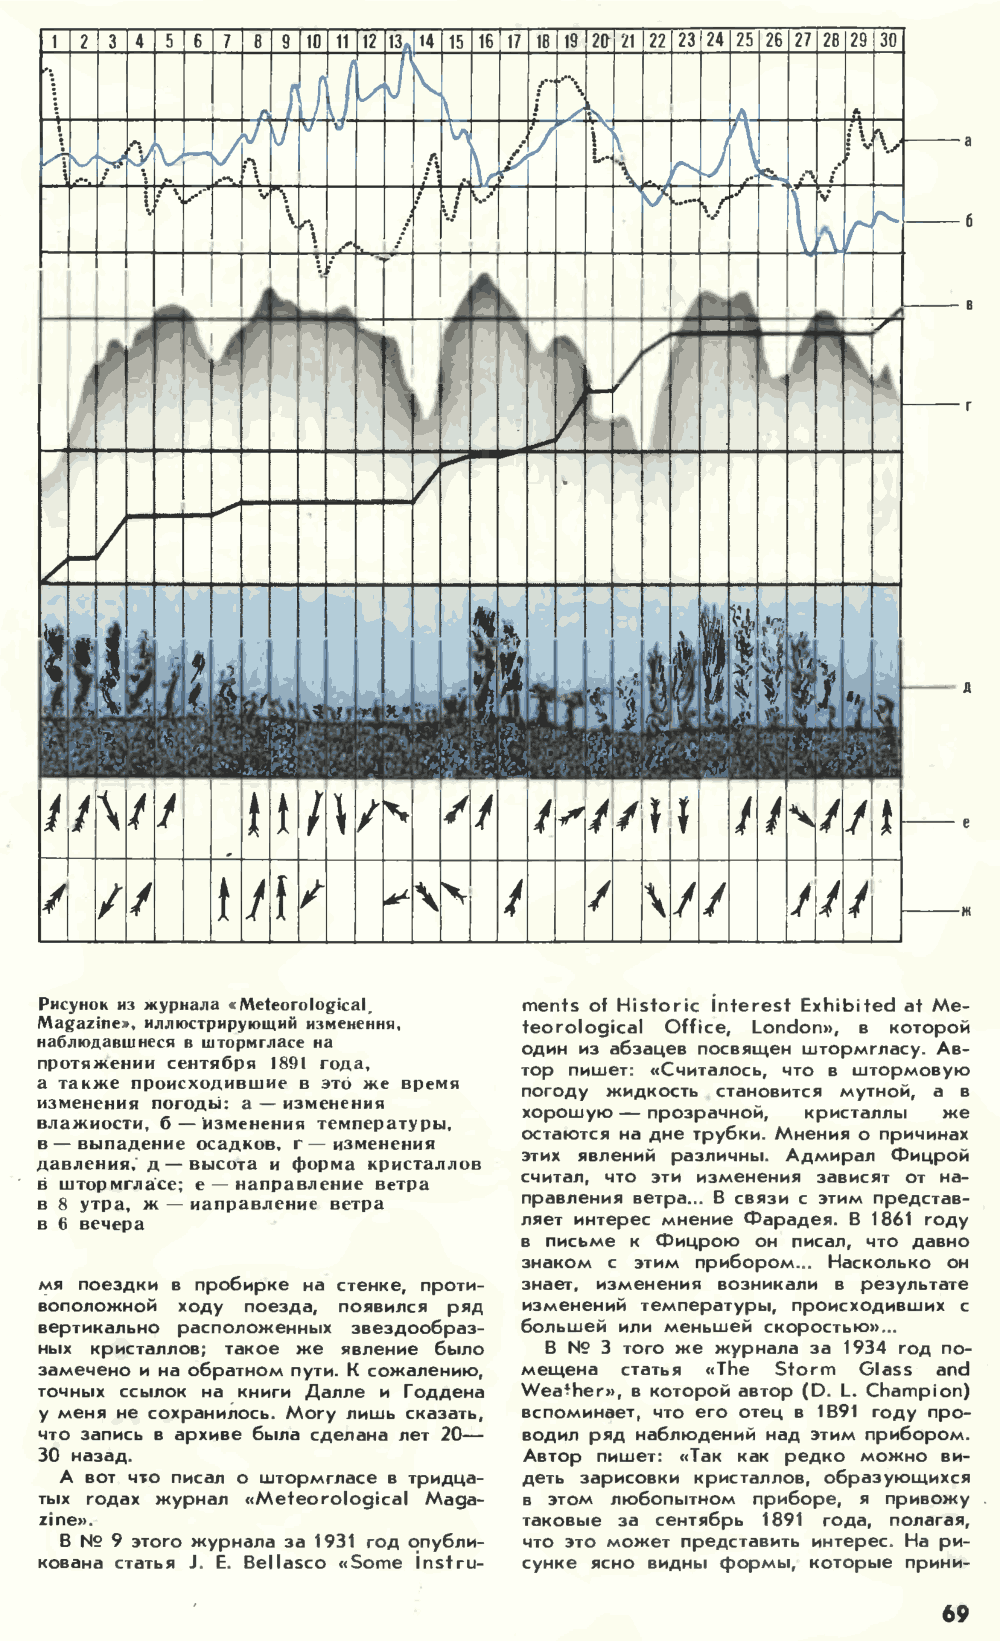 Штормгласс — легенда или реальность? Химия и жизнь, 1980, №2, с.68-71. Фотокопия №2